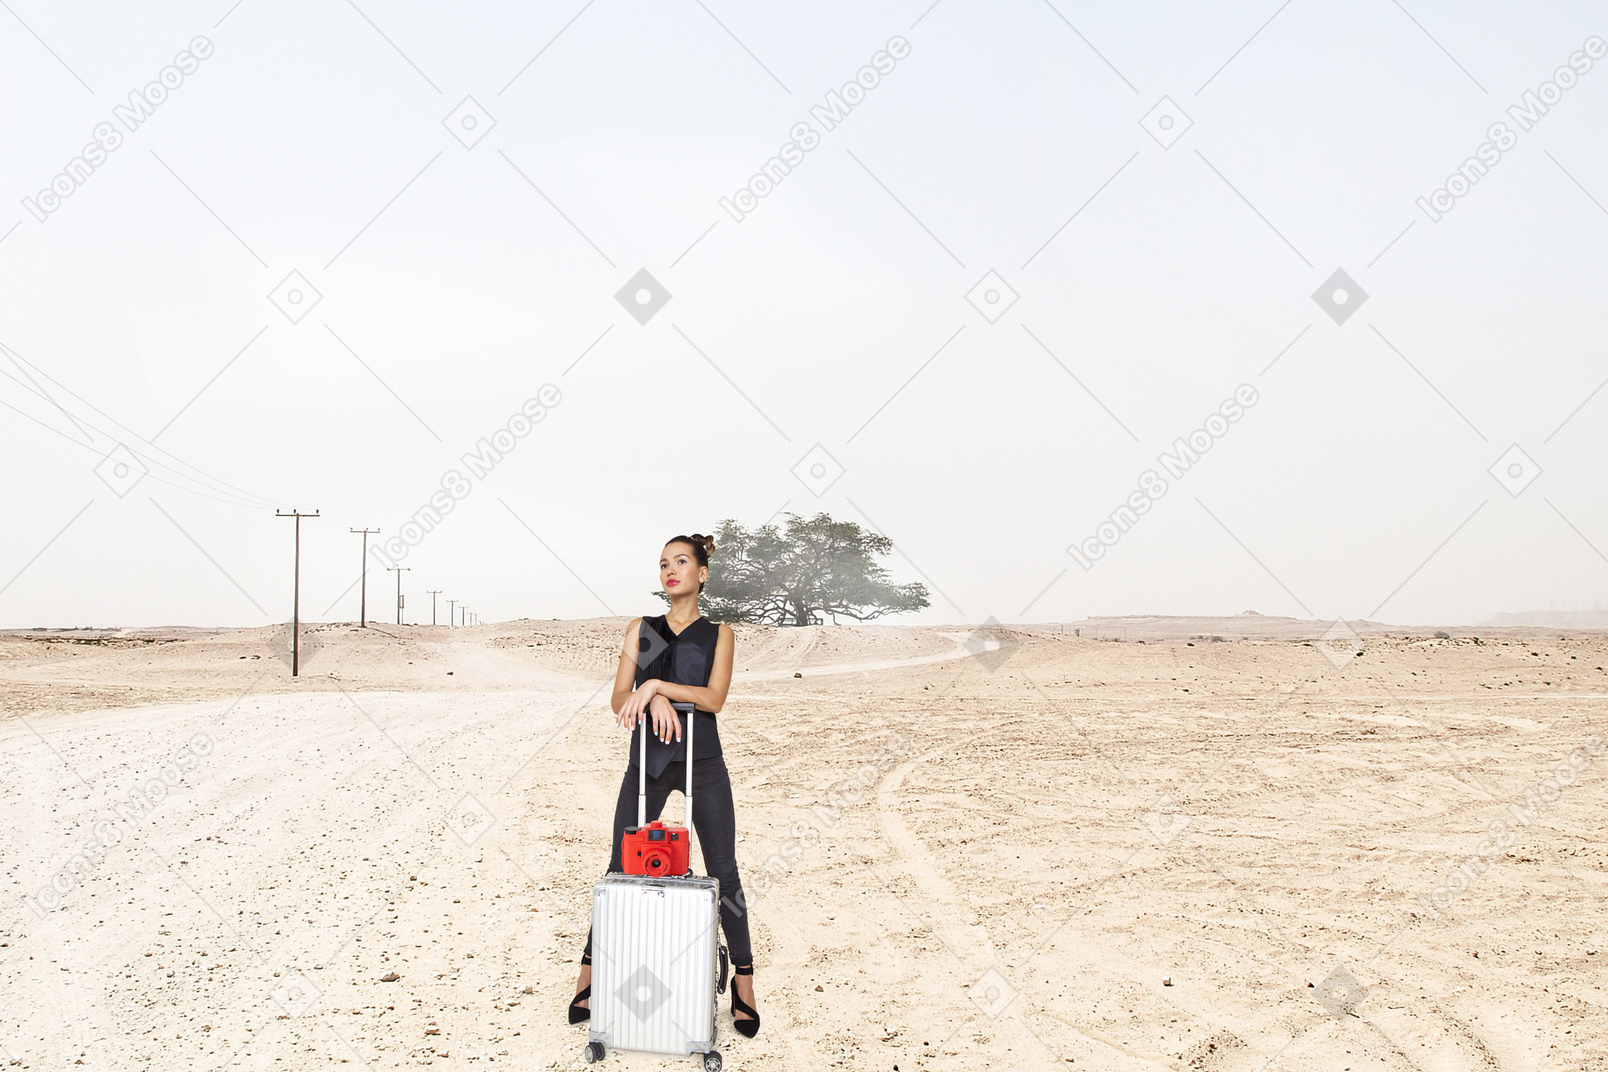 Femme debout avec une valise dans le désert